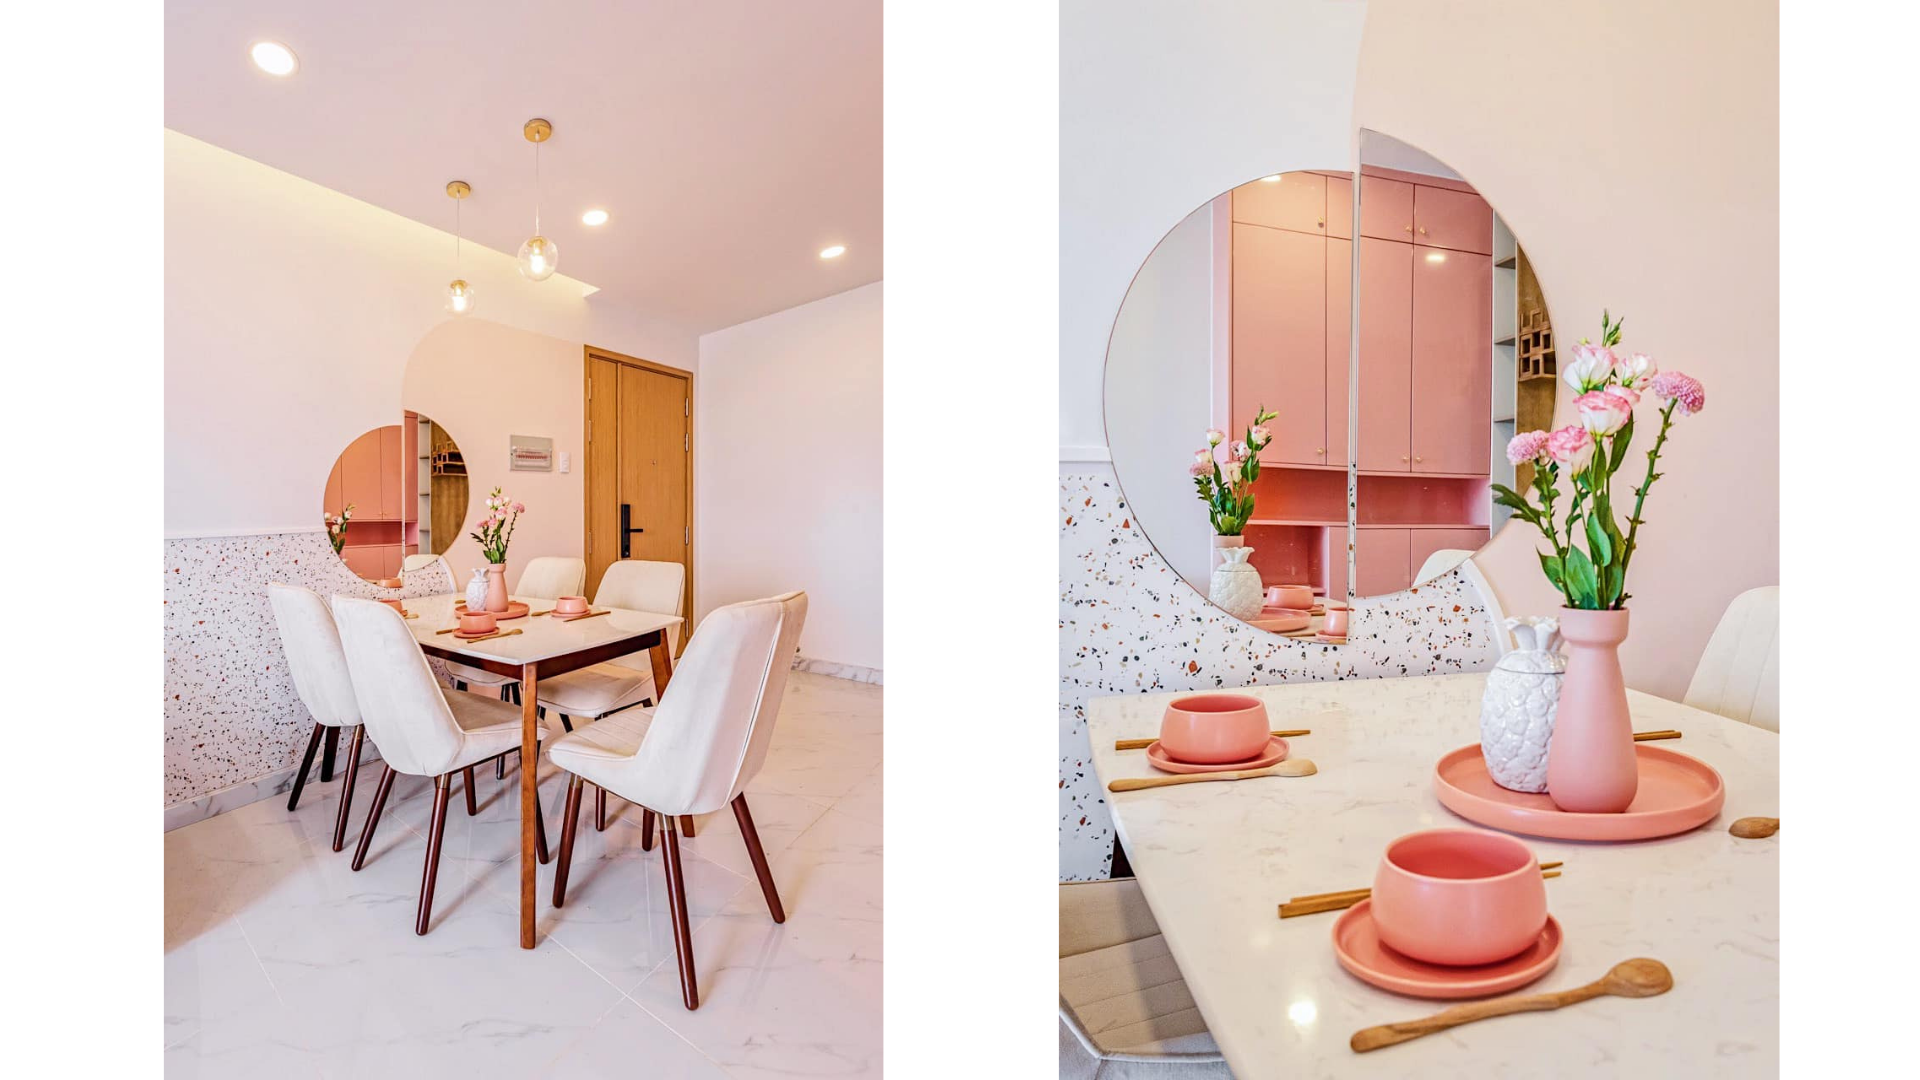 Ngôi nhà thứ hai với màu hồng đậm hơn. Kết hợp với màu nội thất gỗ và ánh sáng vàng khiến không gian vô cùng ấm cúng nơi căn bếp gia đình. Đồ họa: Đức Mạnh